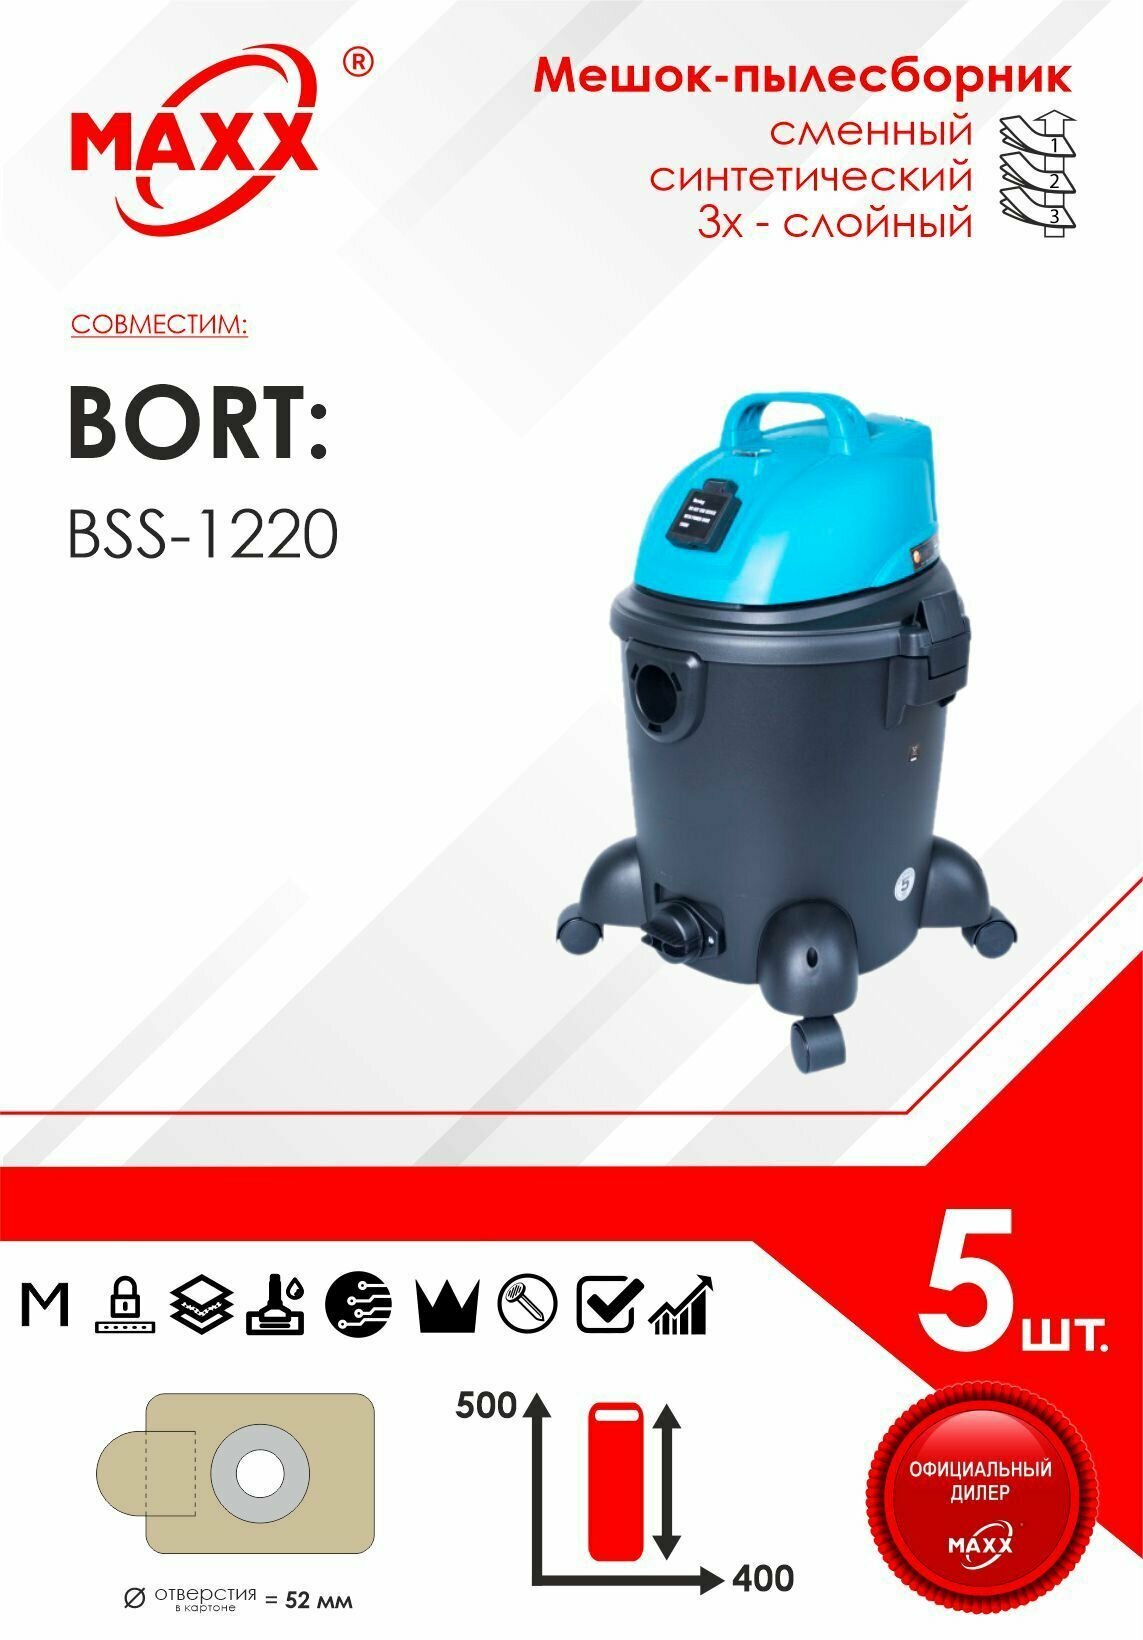 Мешок - пылесборник 5 шт. для пылесоса Bort BSS-1220, 1200 Вт, черный/голубой (для BLACK не подходит)